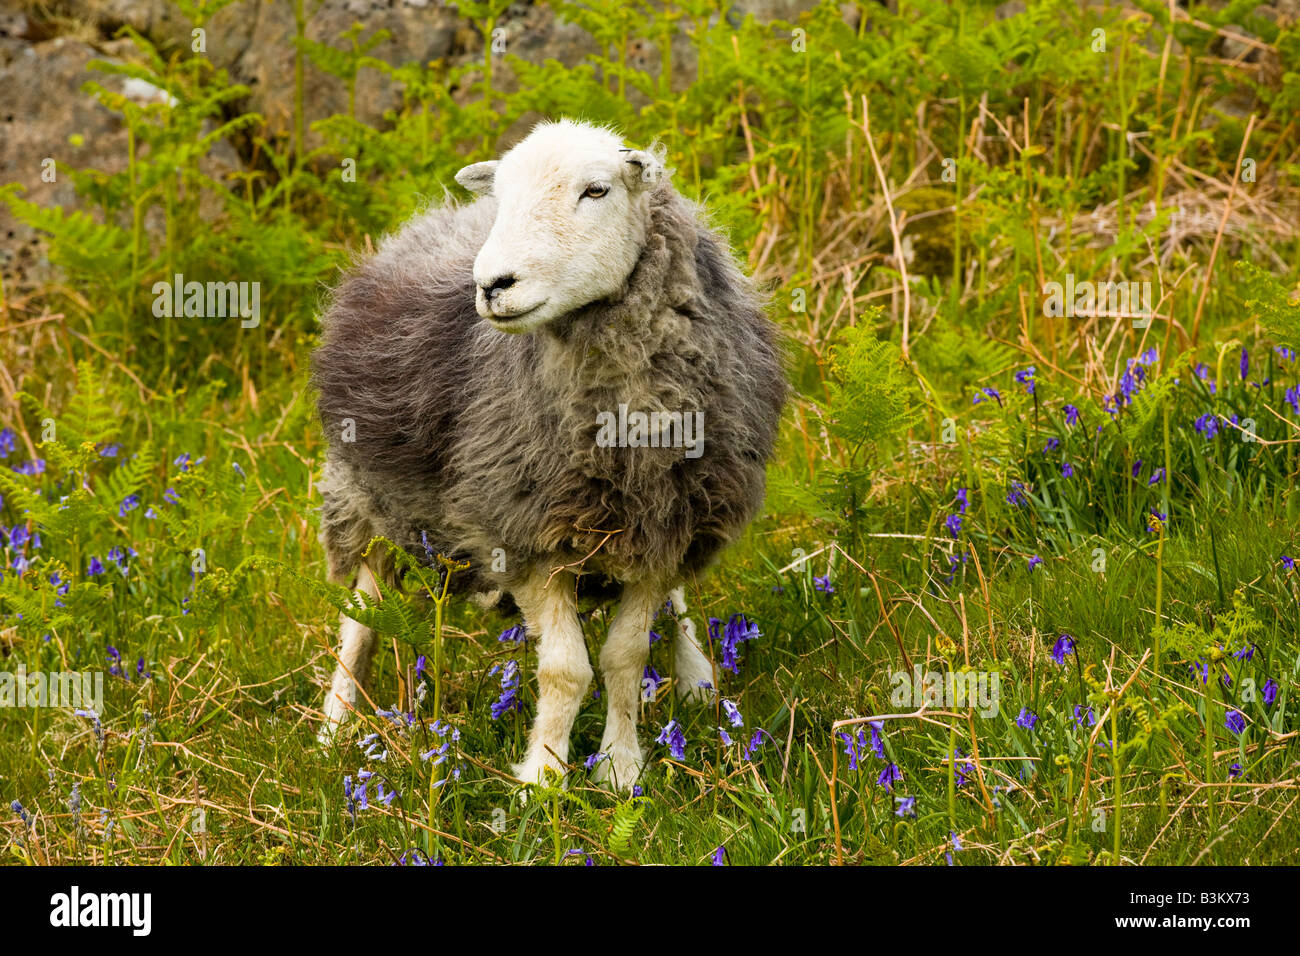 L'Angleterre, Cumbria, Parc National de Lake District. Les moutons et une couverture de bluebells sur une tombe près de Dunnerdale Forêt. Banque D'Images